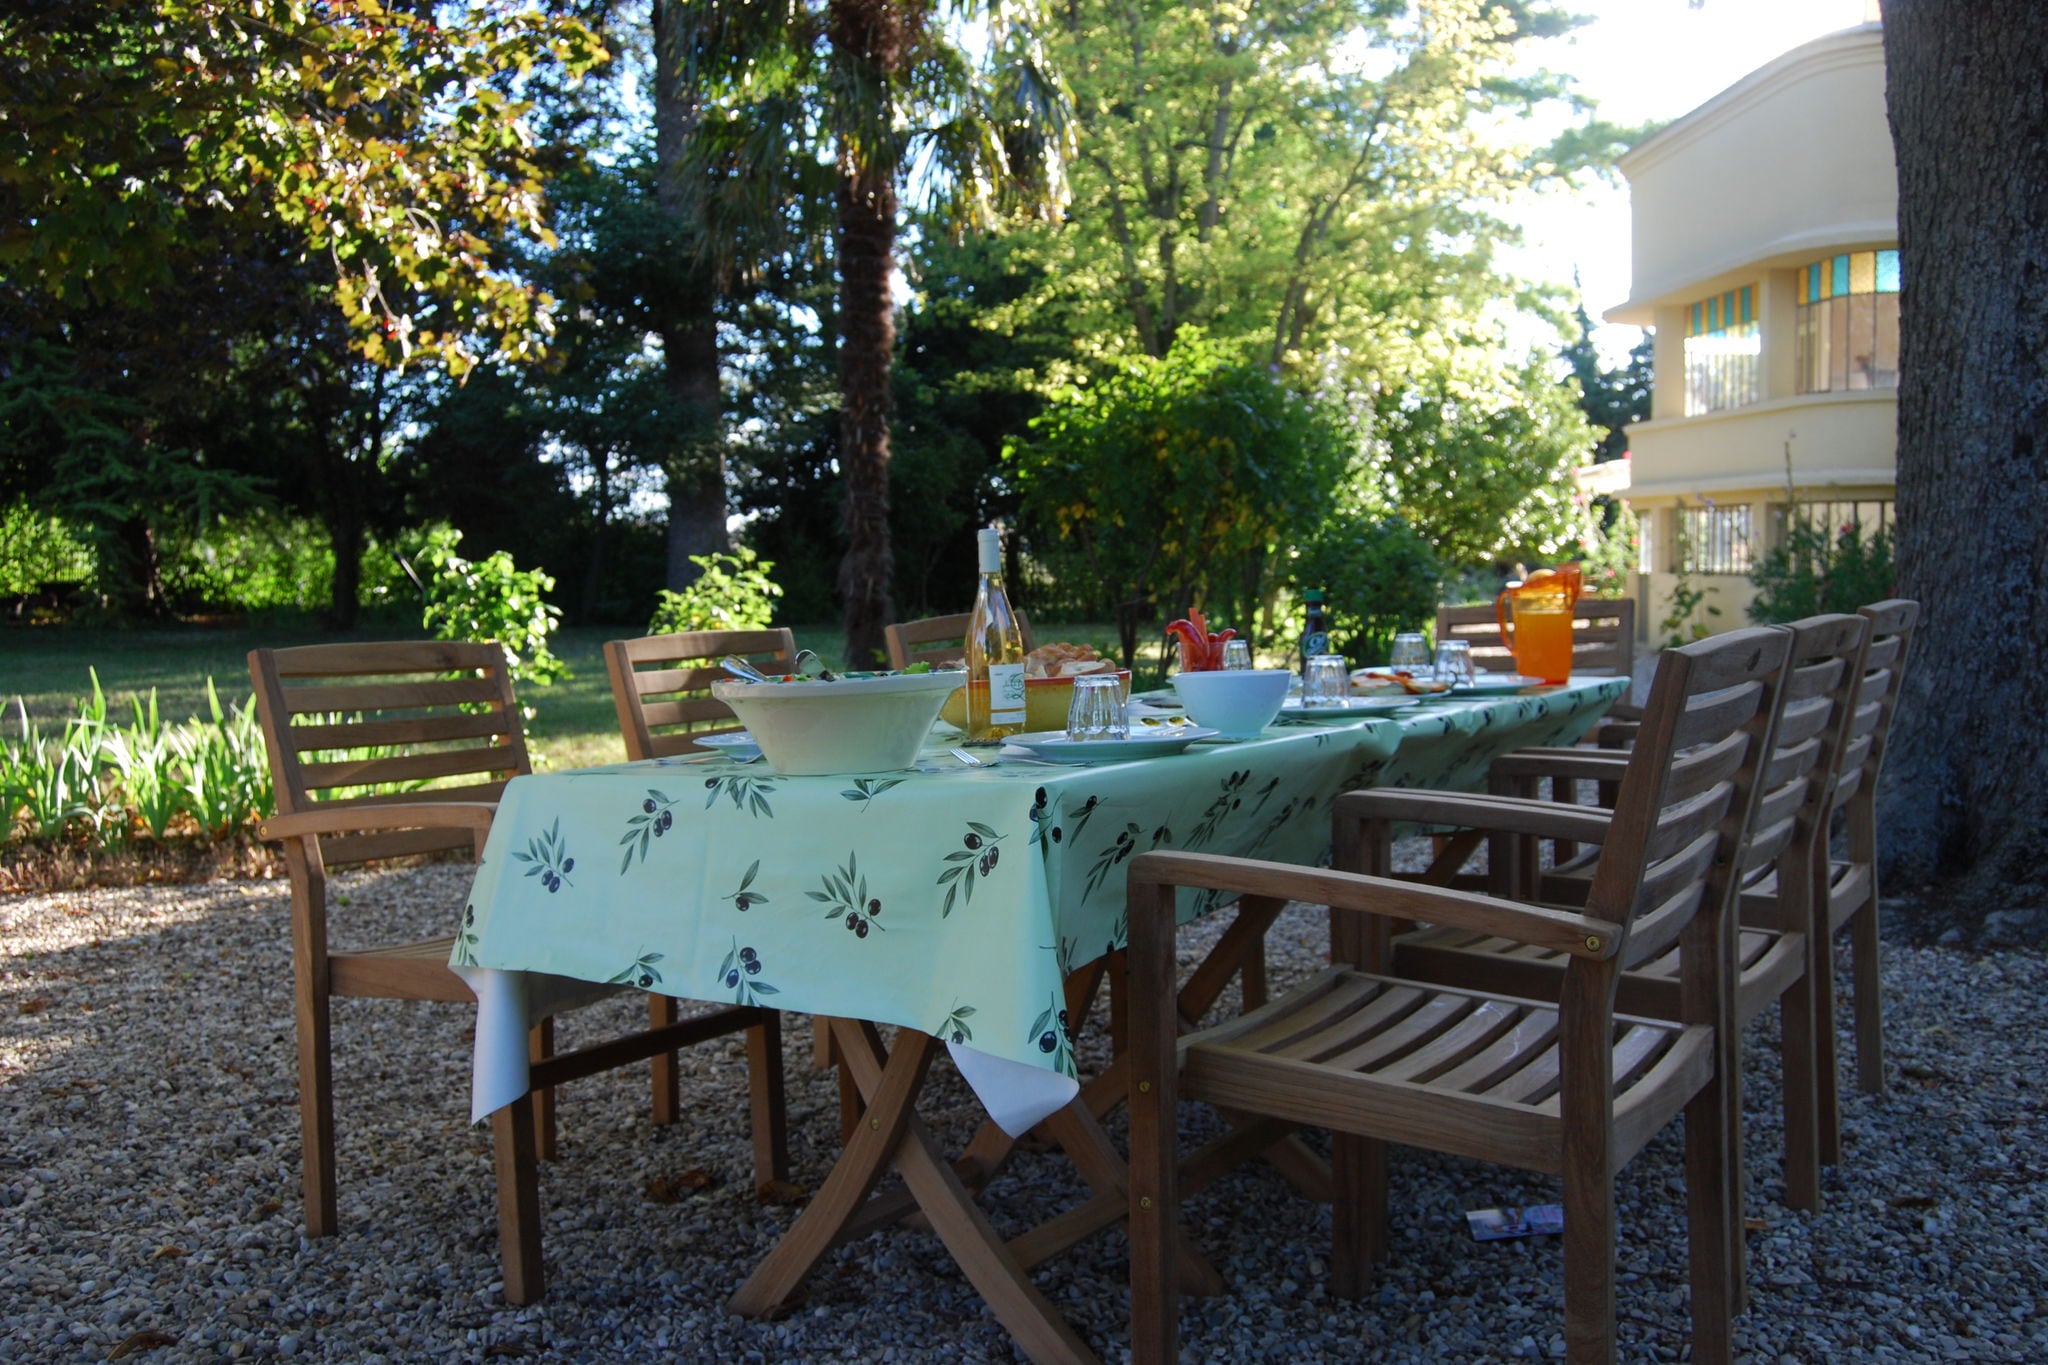 Luxuriöse Villa mit Swimmingpool in der Provence